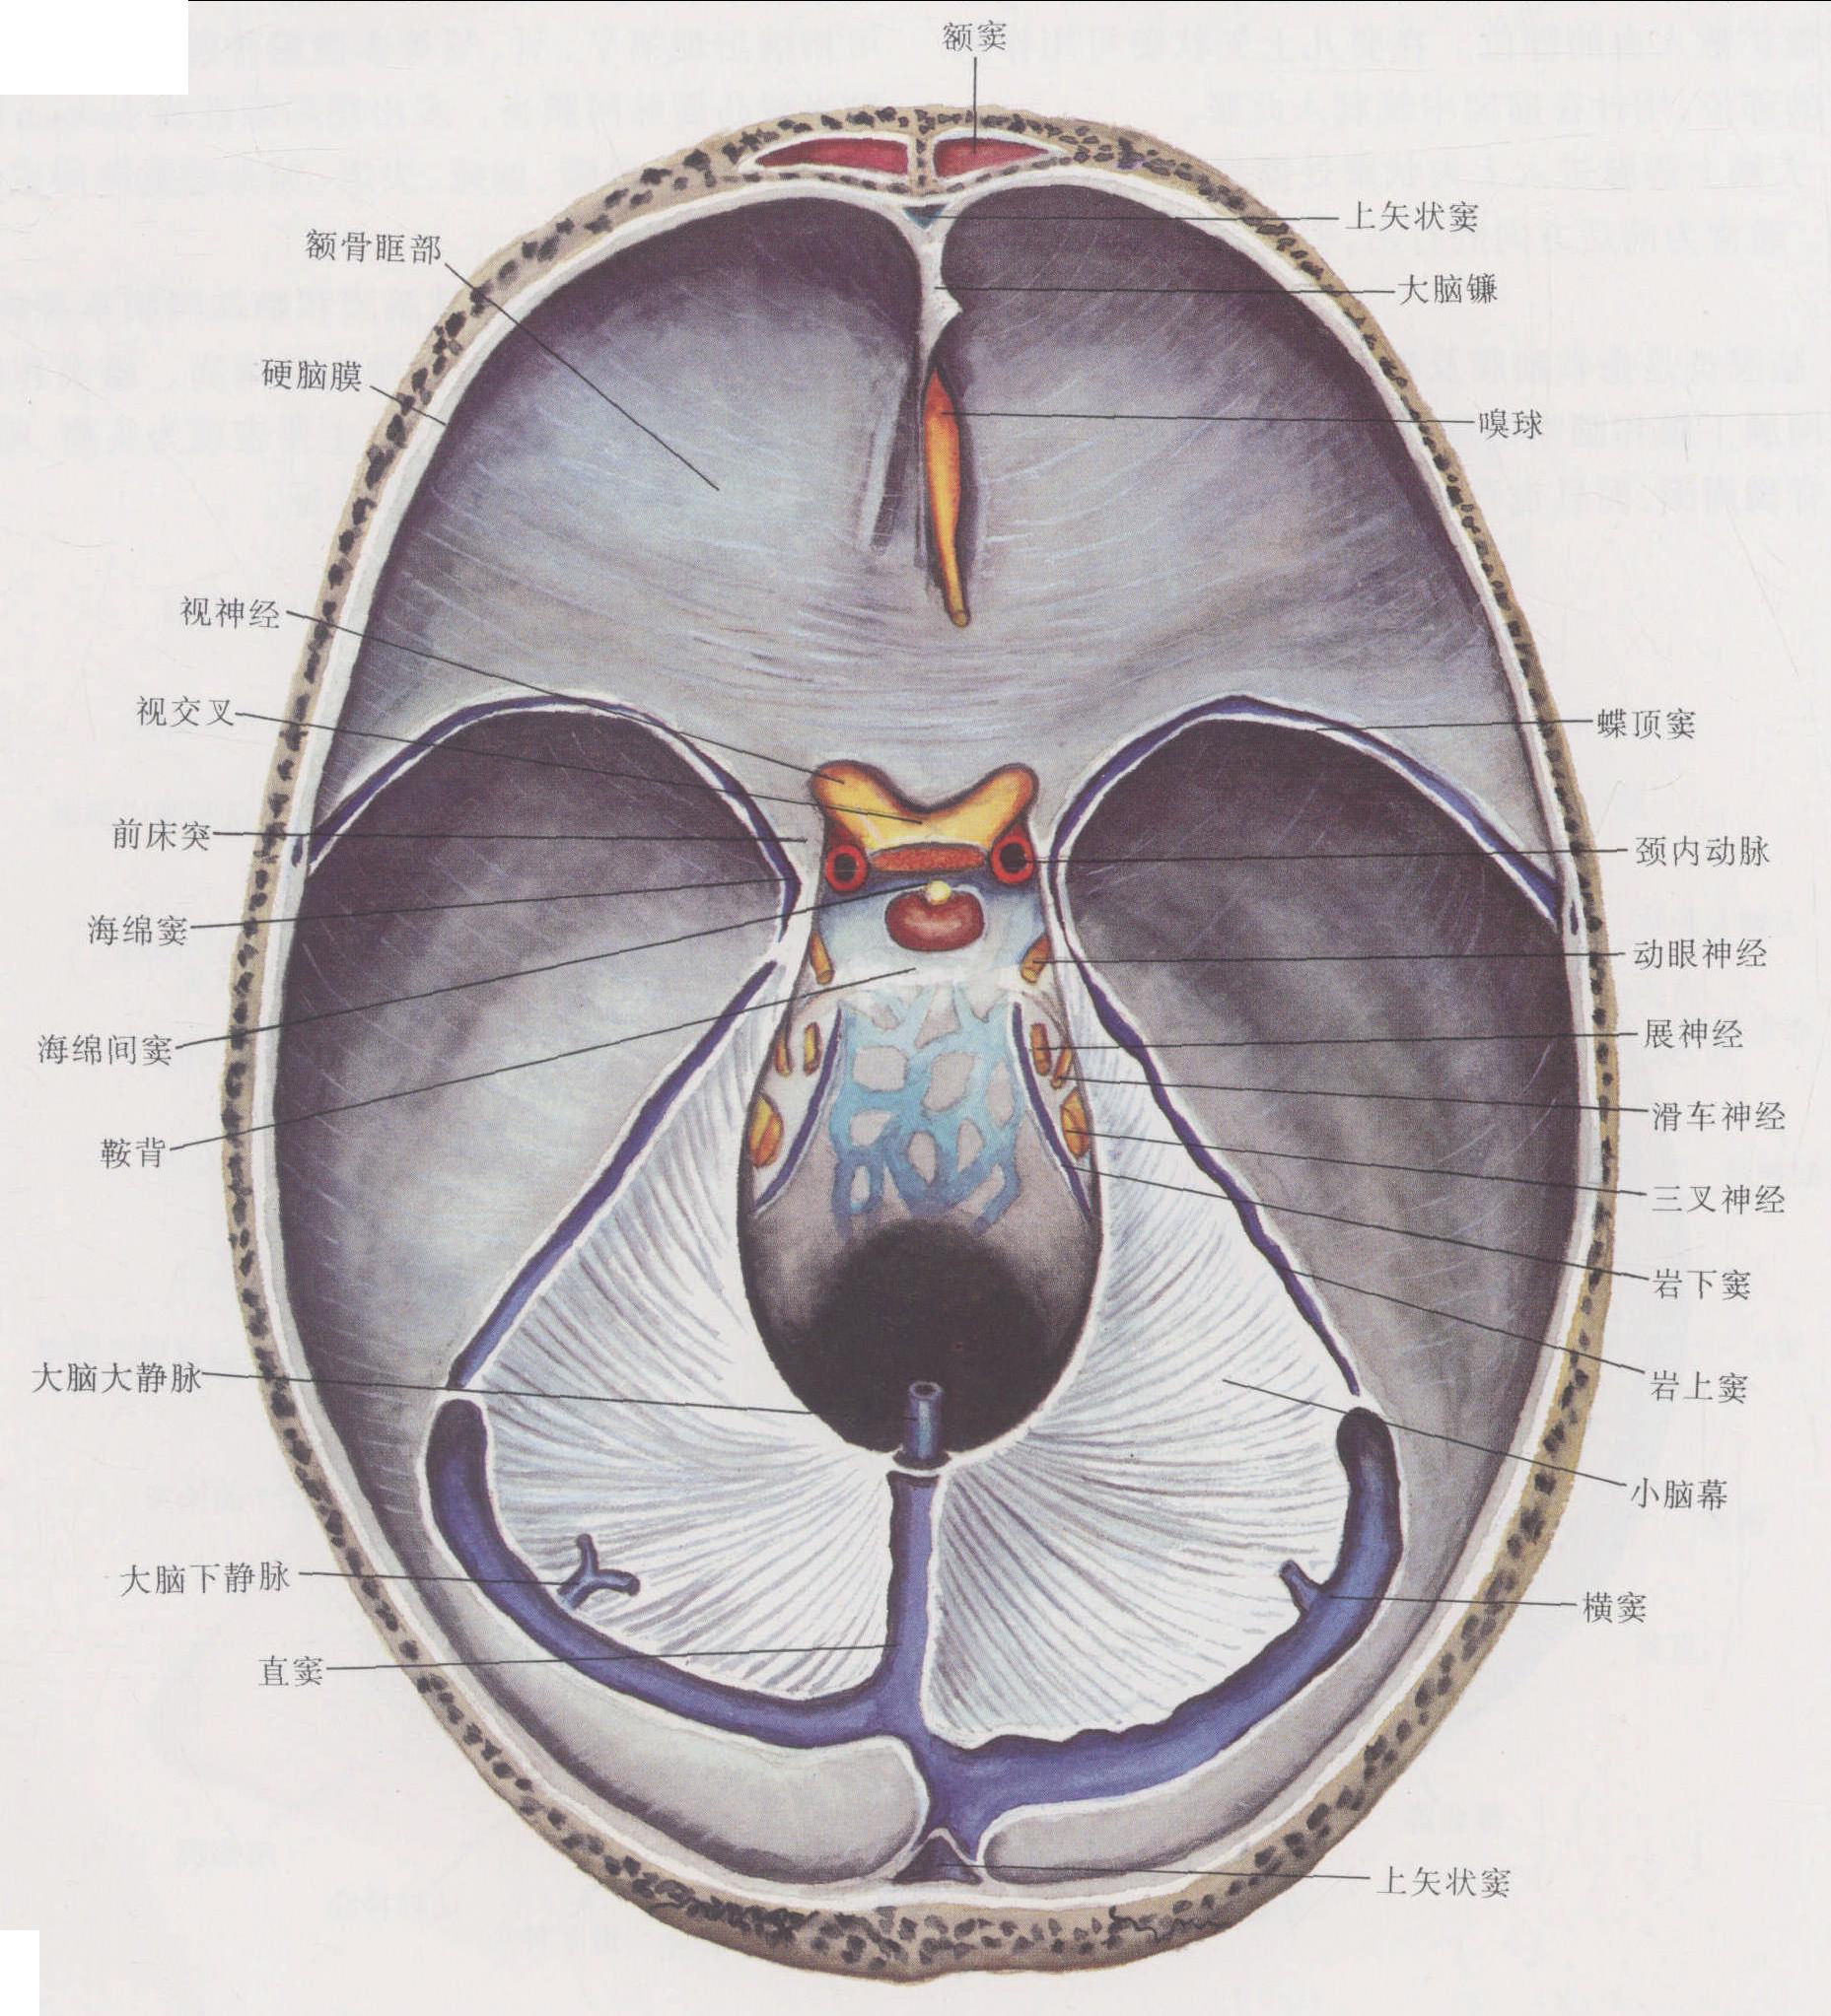 图1-9 硬脑膜及硬脑膜窦 右侧面观-临床解剖学-医学